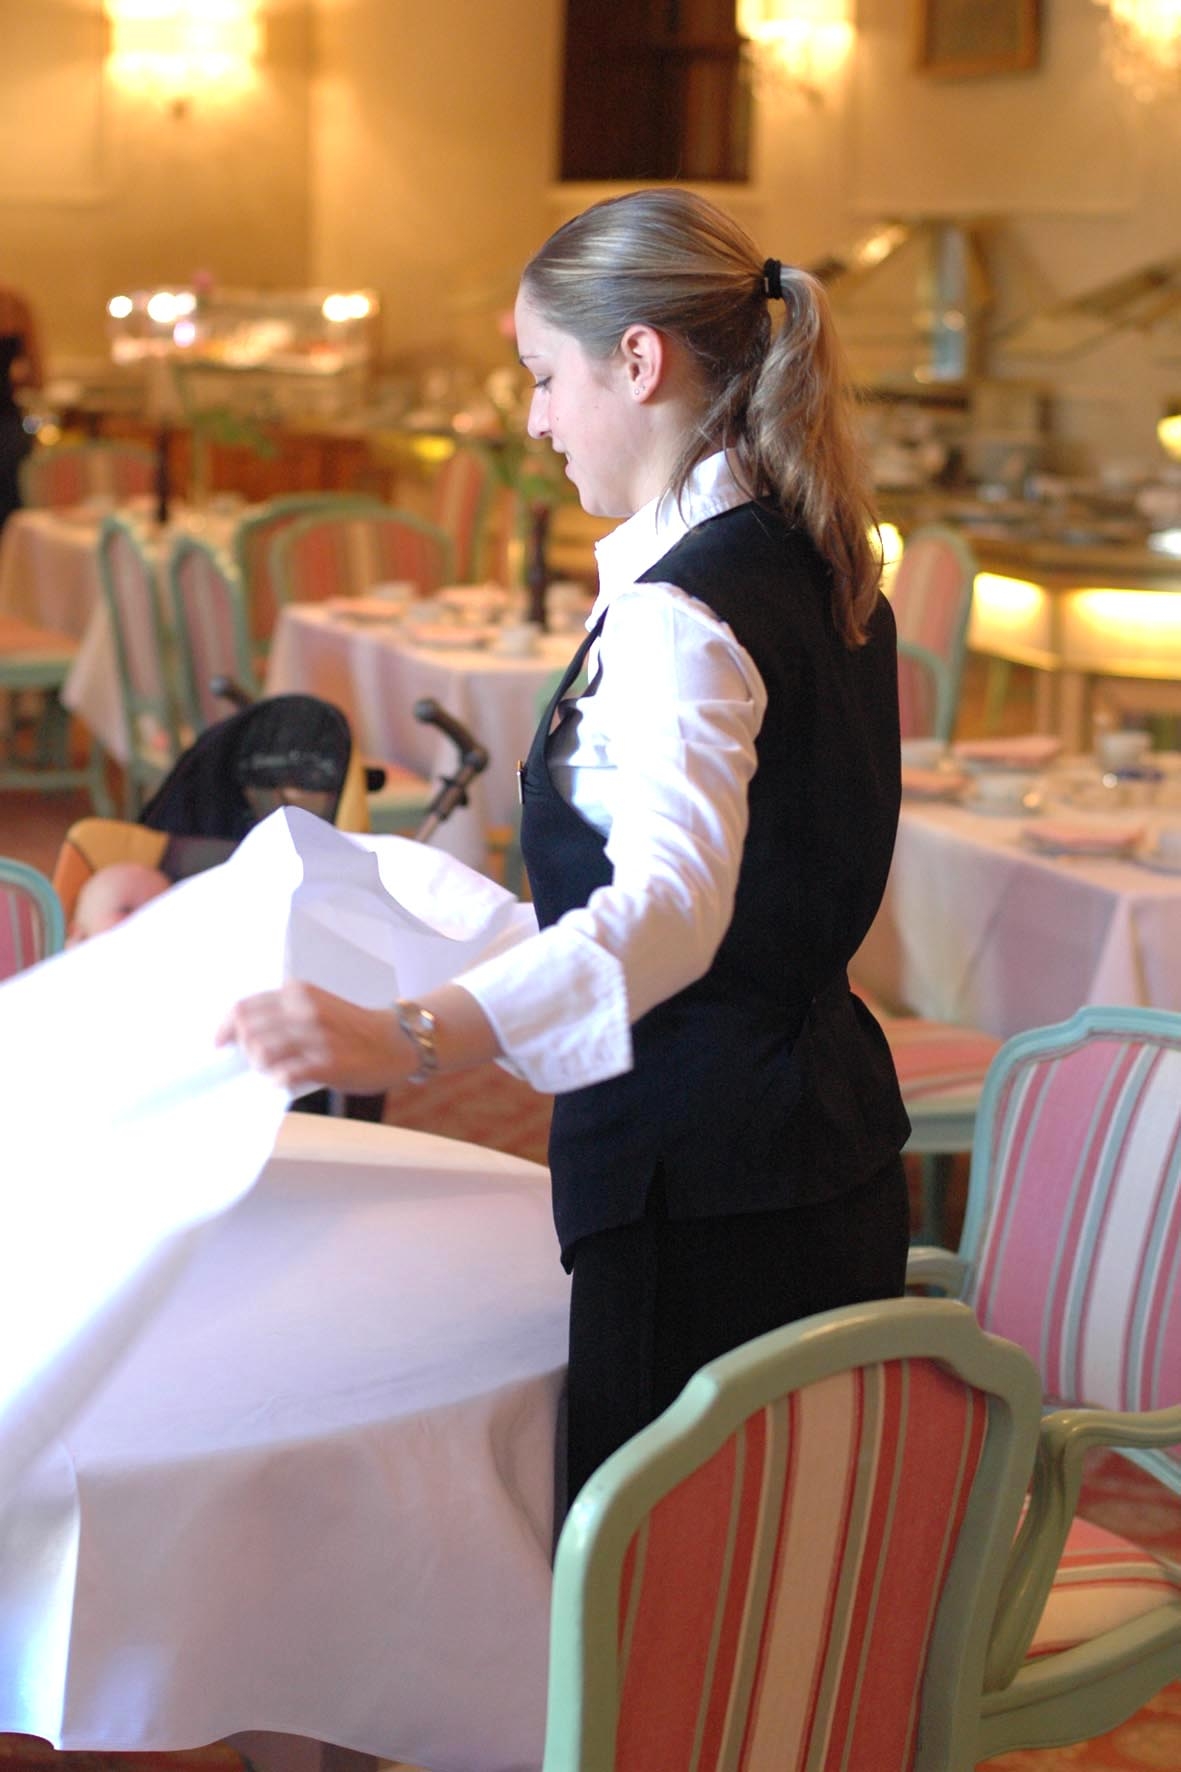 In Österreich erhalten die angestellten Gastro-Mitarbeiter 2,2% mehr Lohn